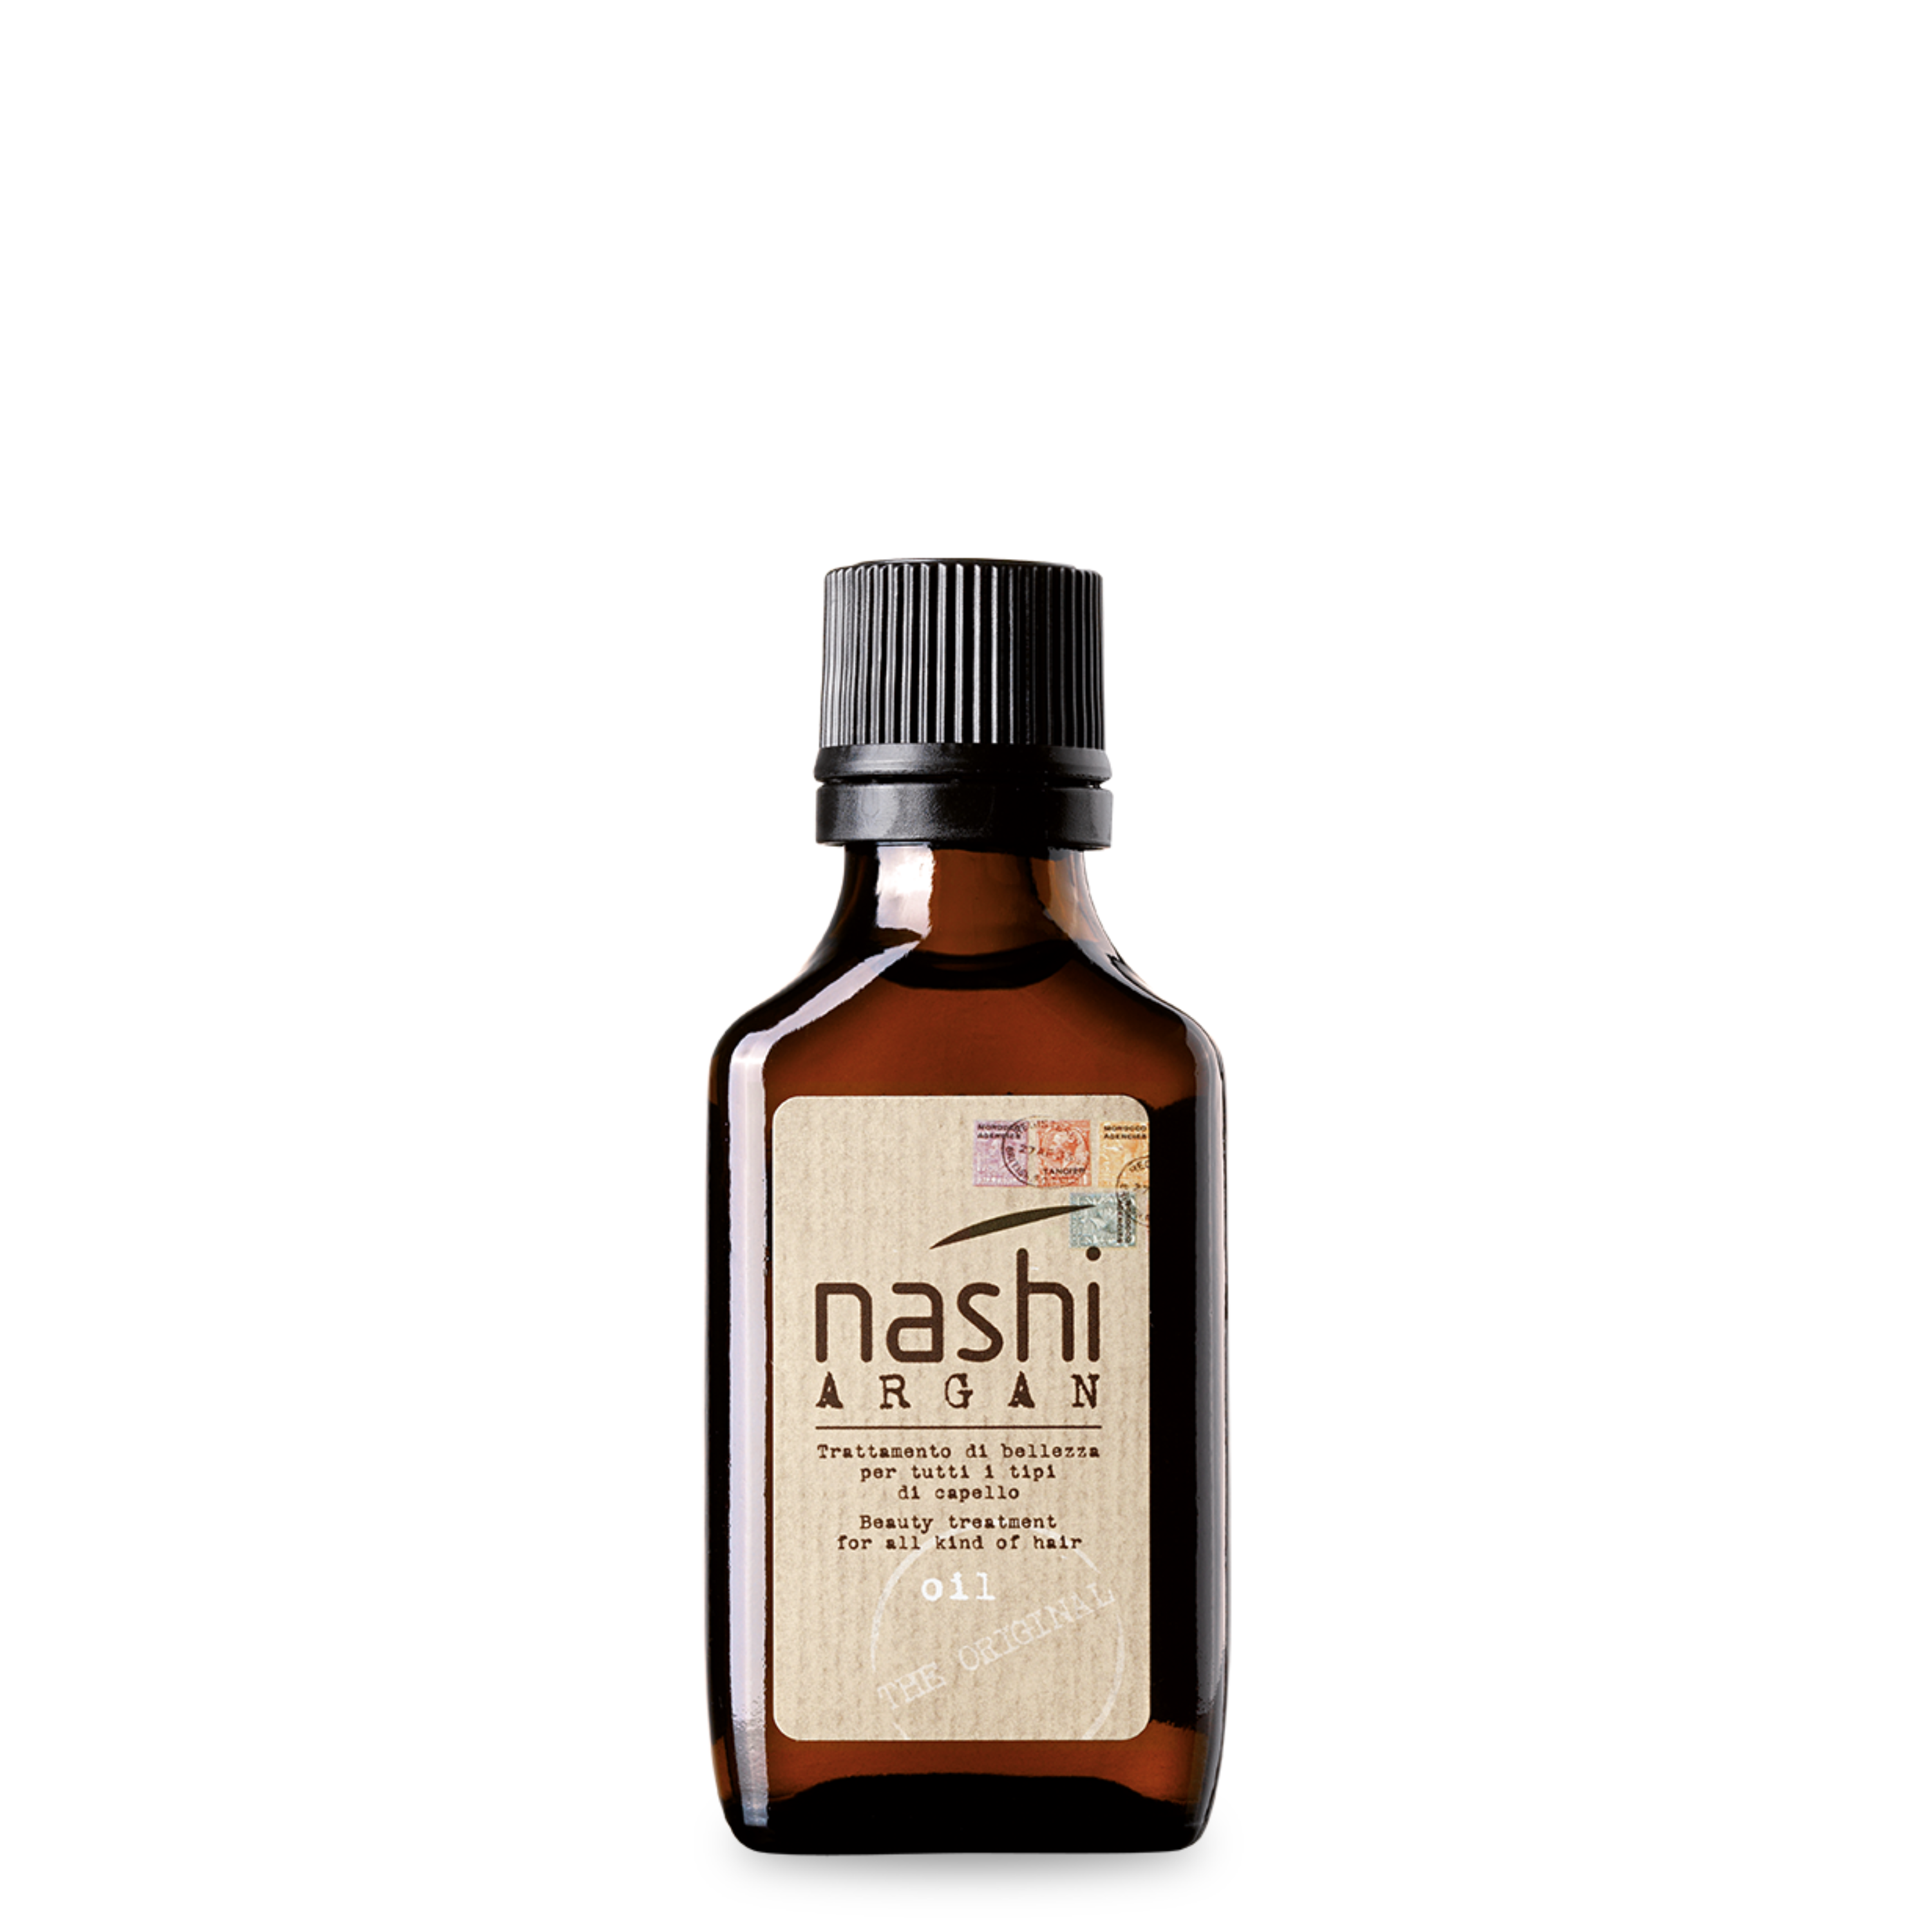 Nashi. Масло nashi Argan Oil. Nashi Argan Oil масло для волос. Nashi Argan масло косметическое. Масло для бороды Argan Oil.